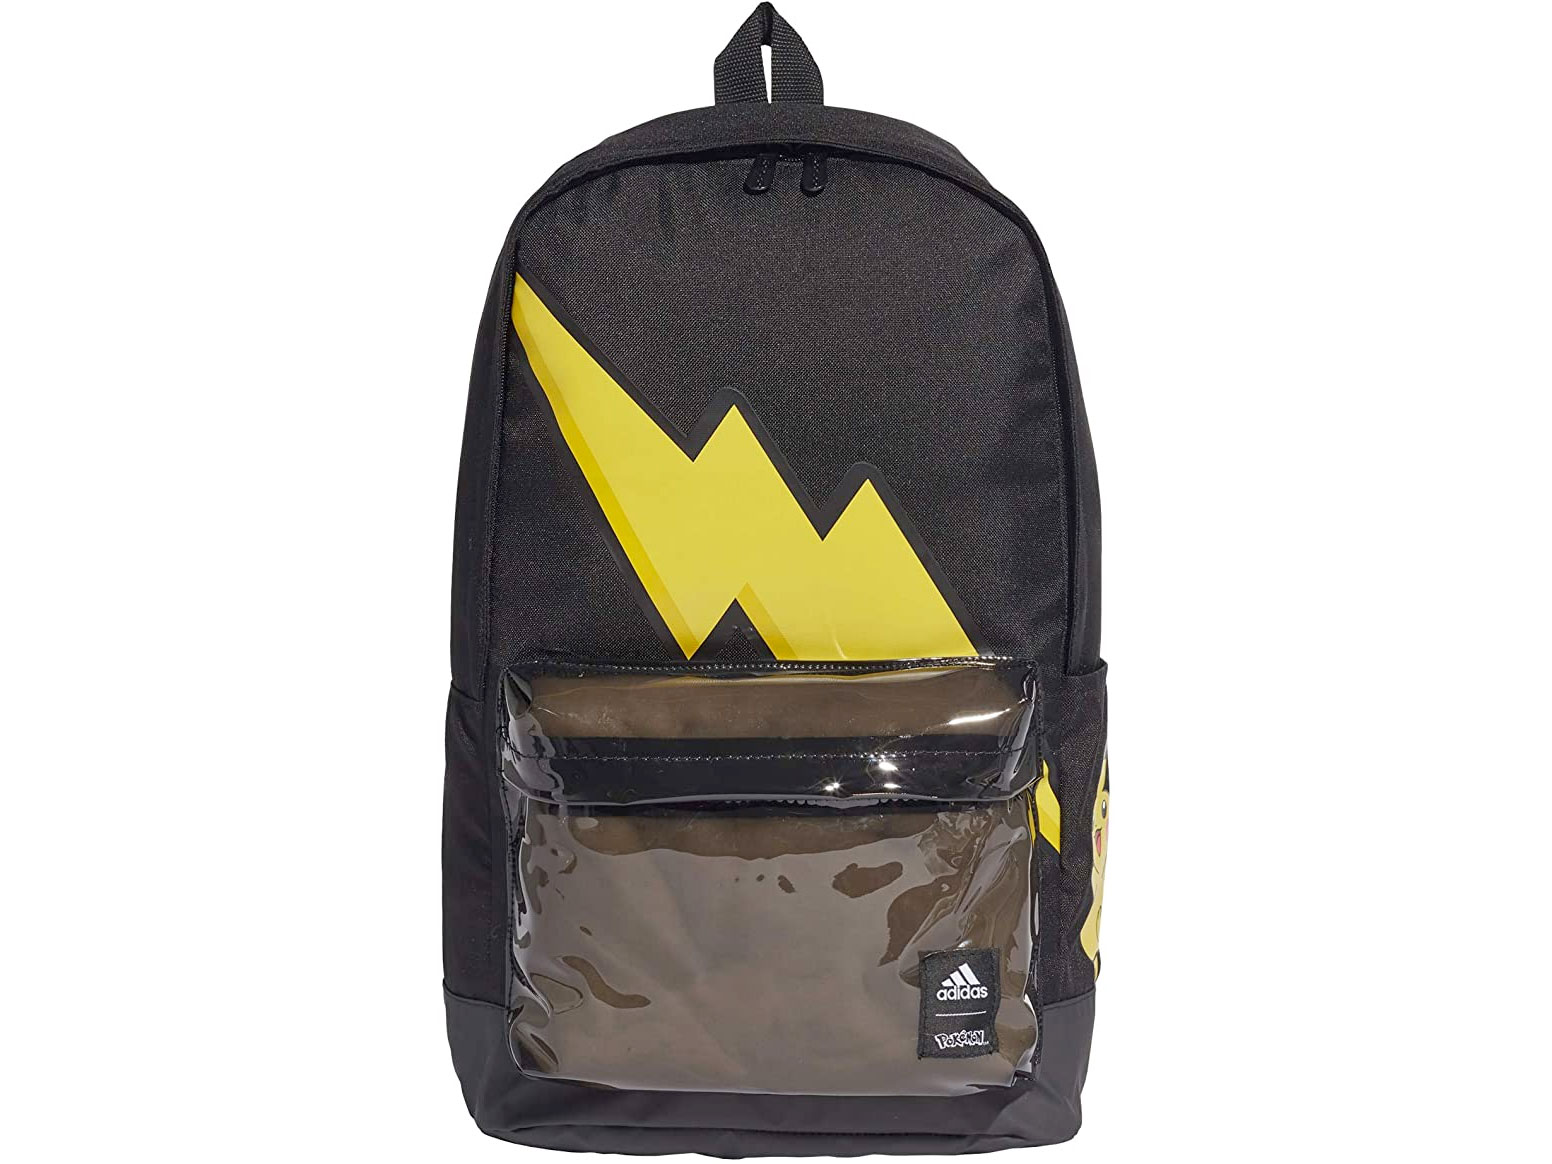 Amazon：Adidas x Pokemon Backpack只賣$15.60